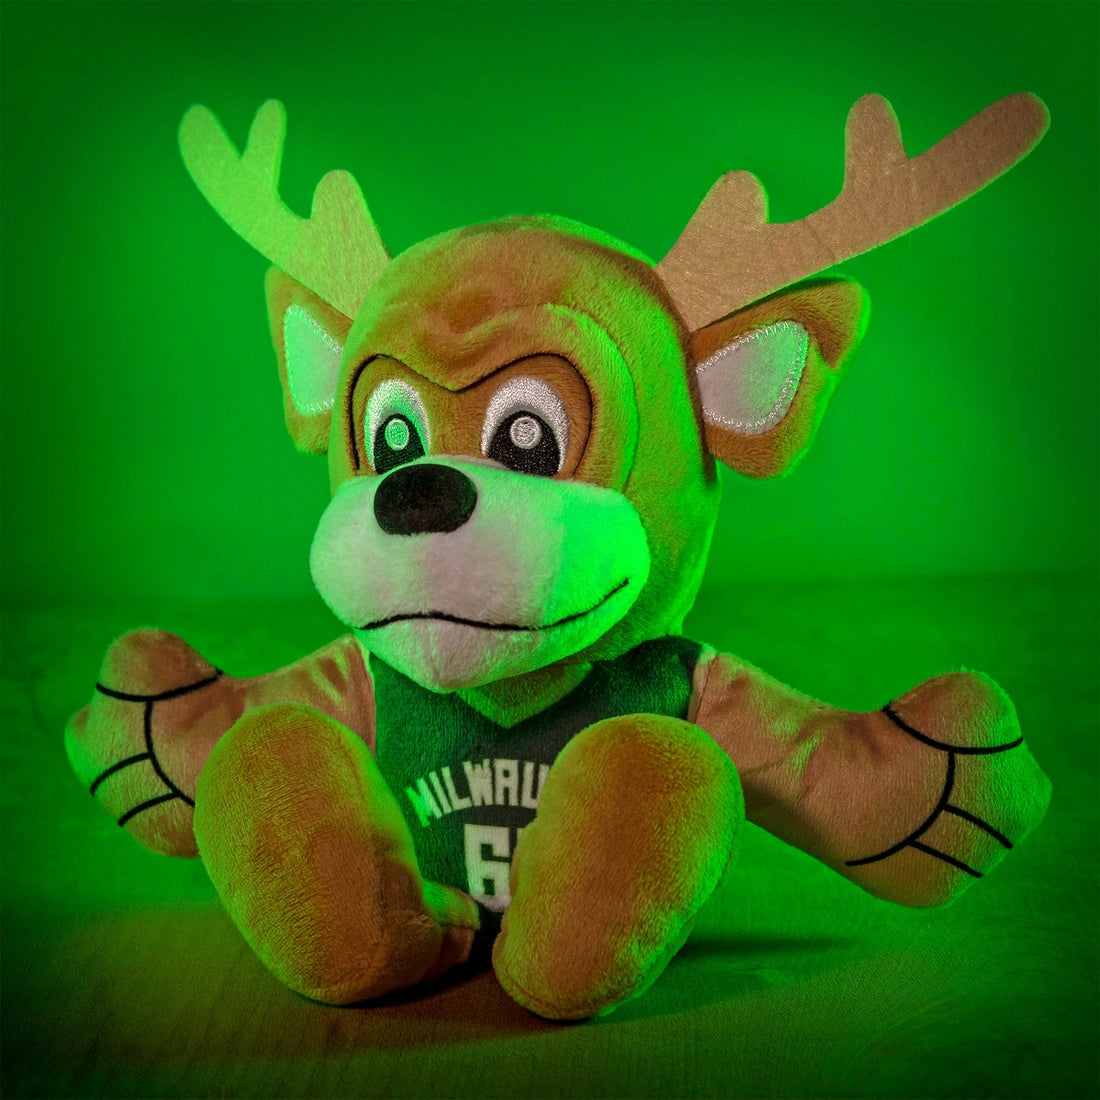 Milwaukee Bucks Bango Mascot 8" Plush